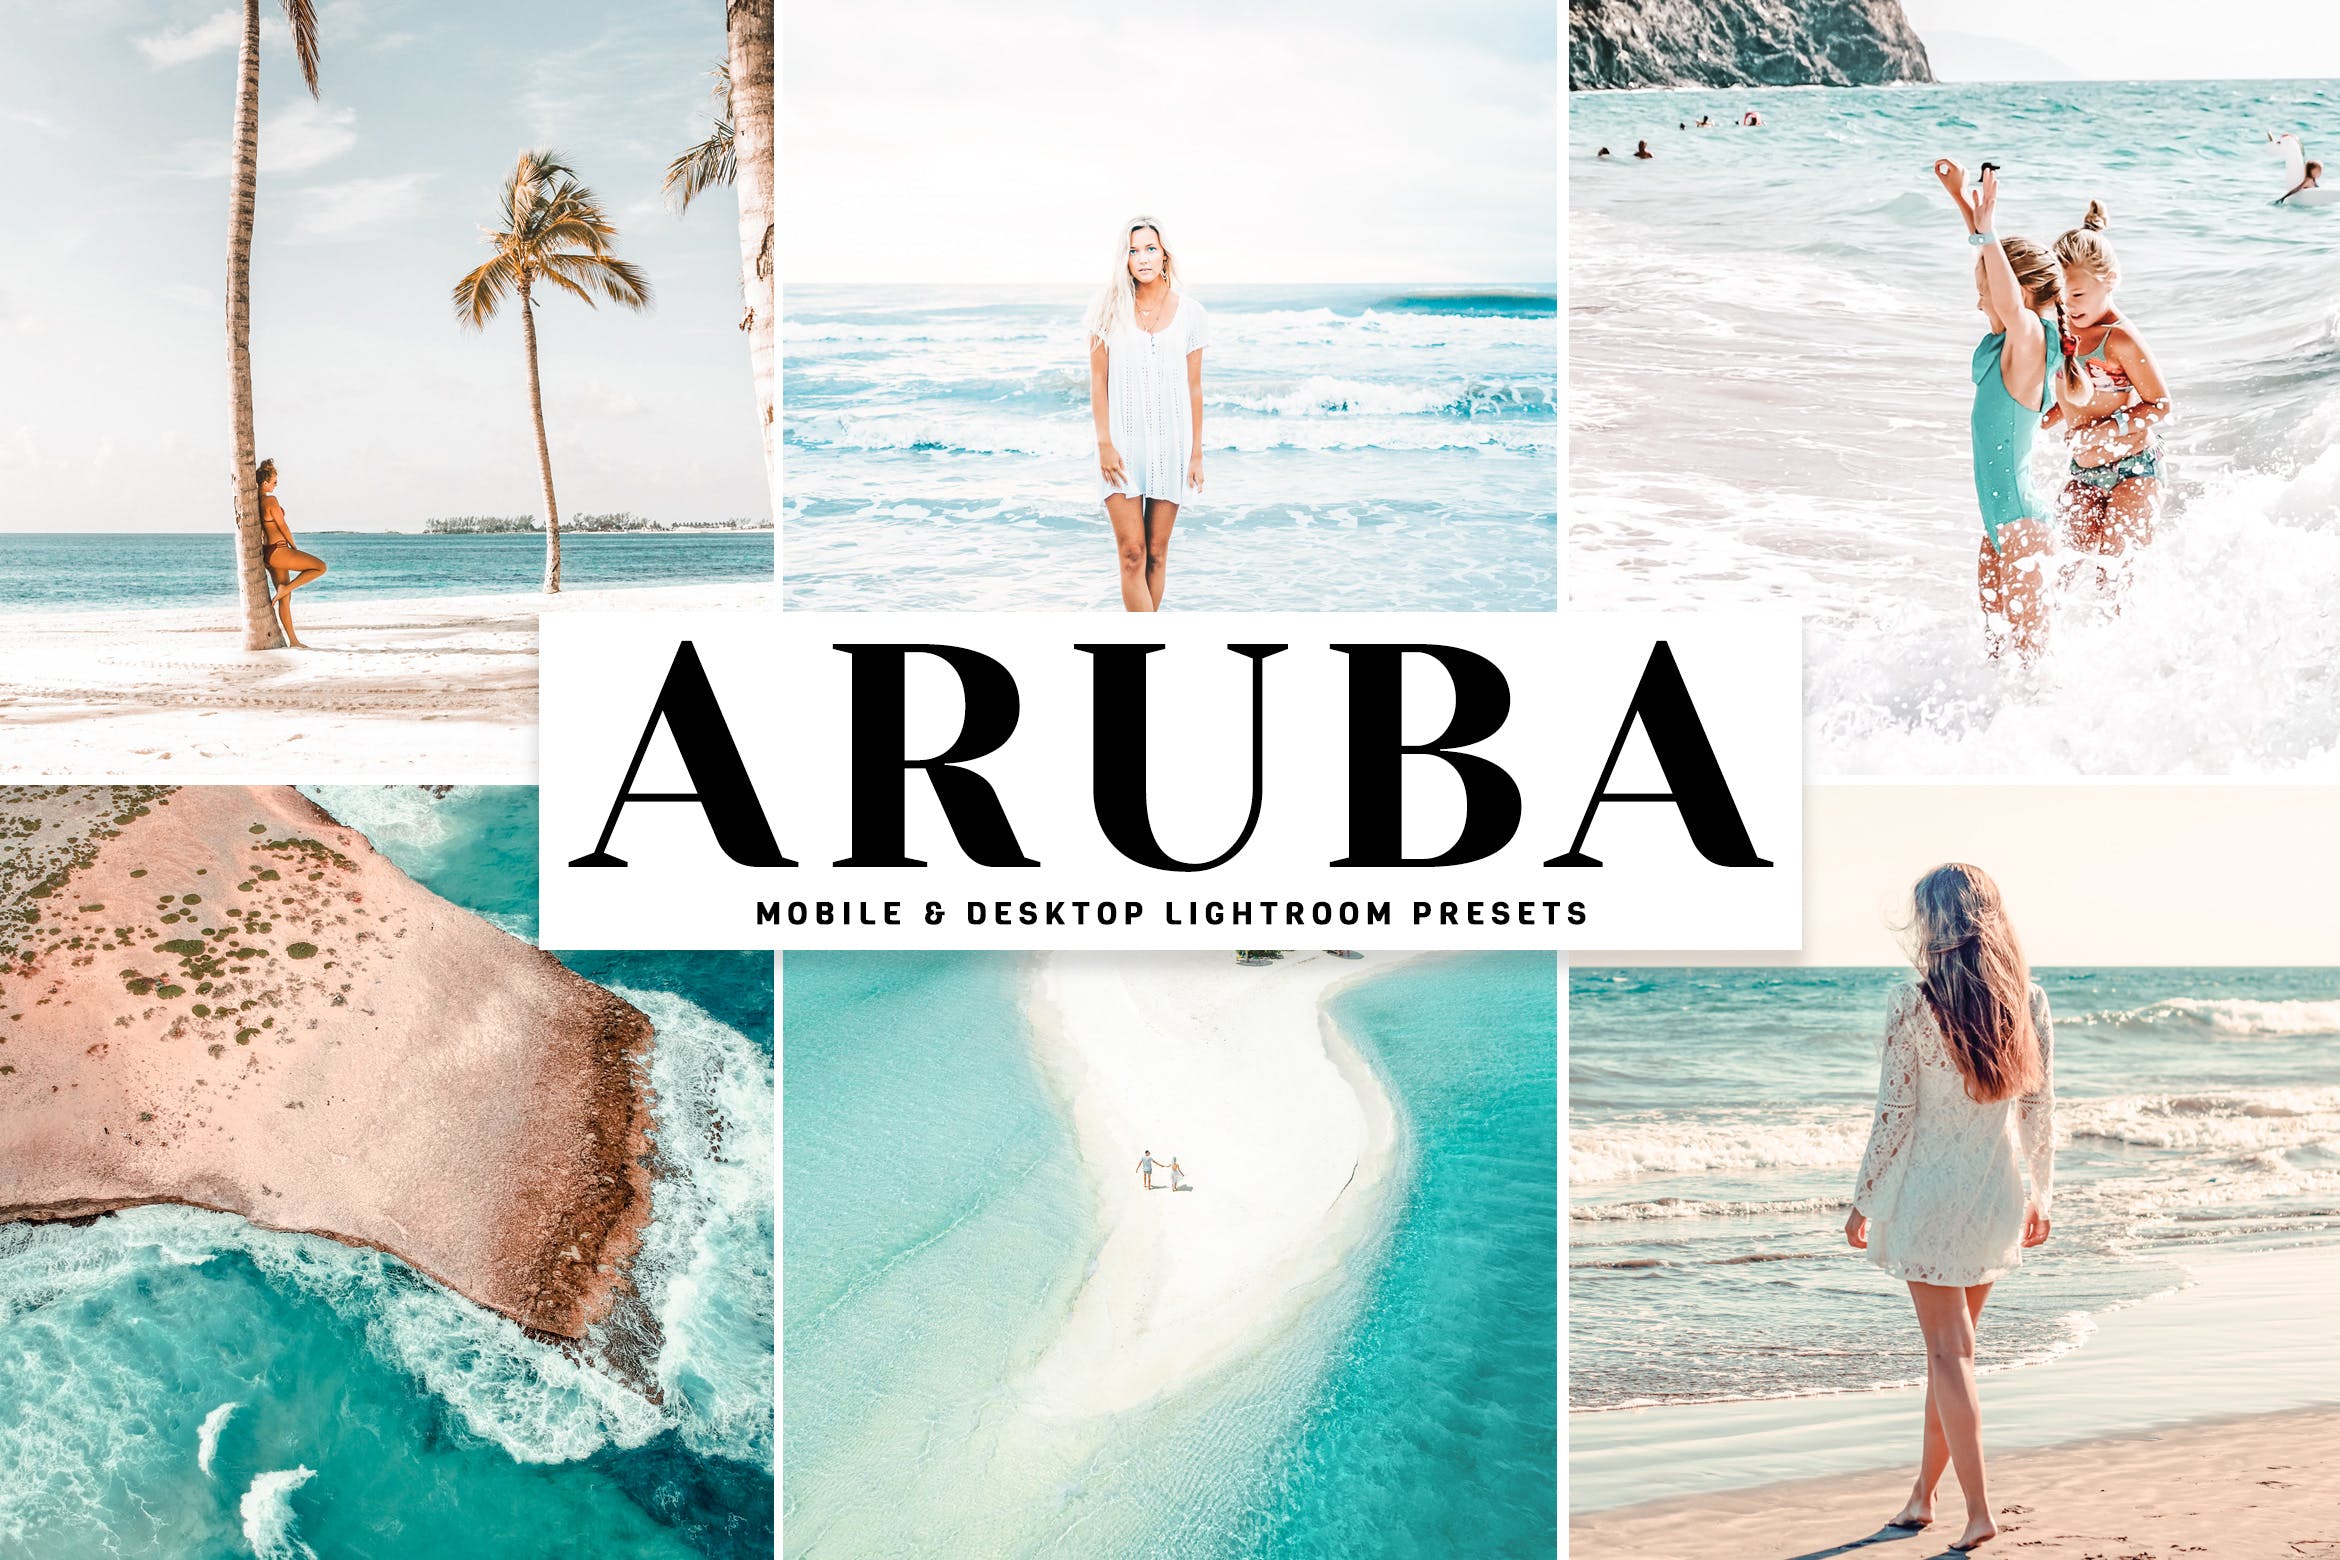 精美梦幻照片效果LR预设调色滤镜下载 Aruba Mobile & Desktop Lightroom Presets插图